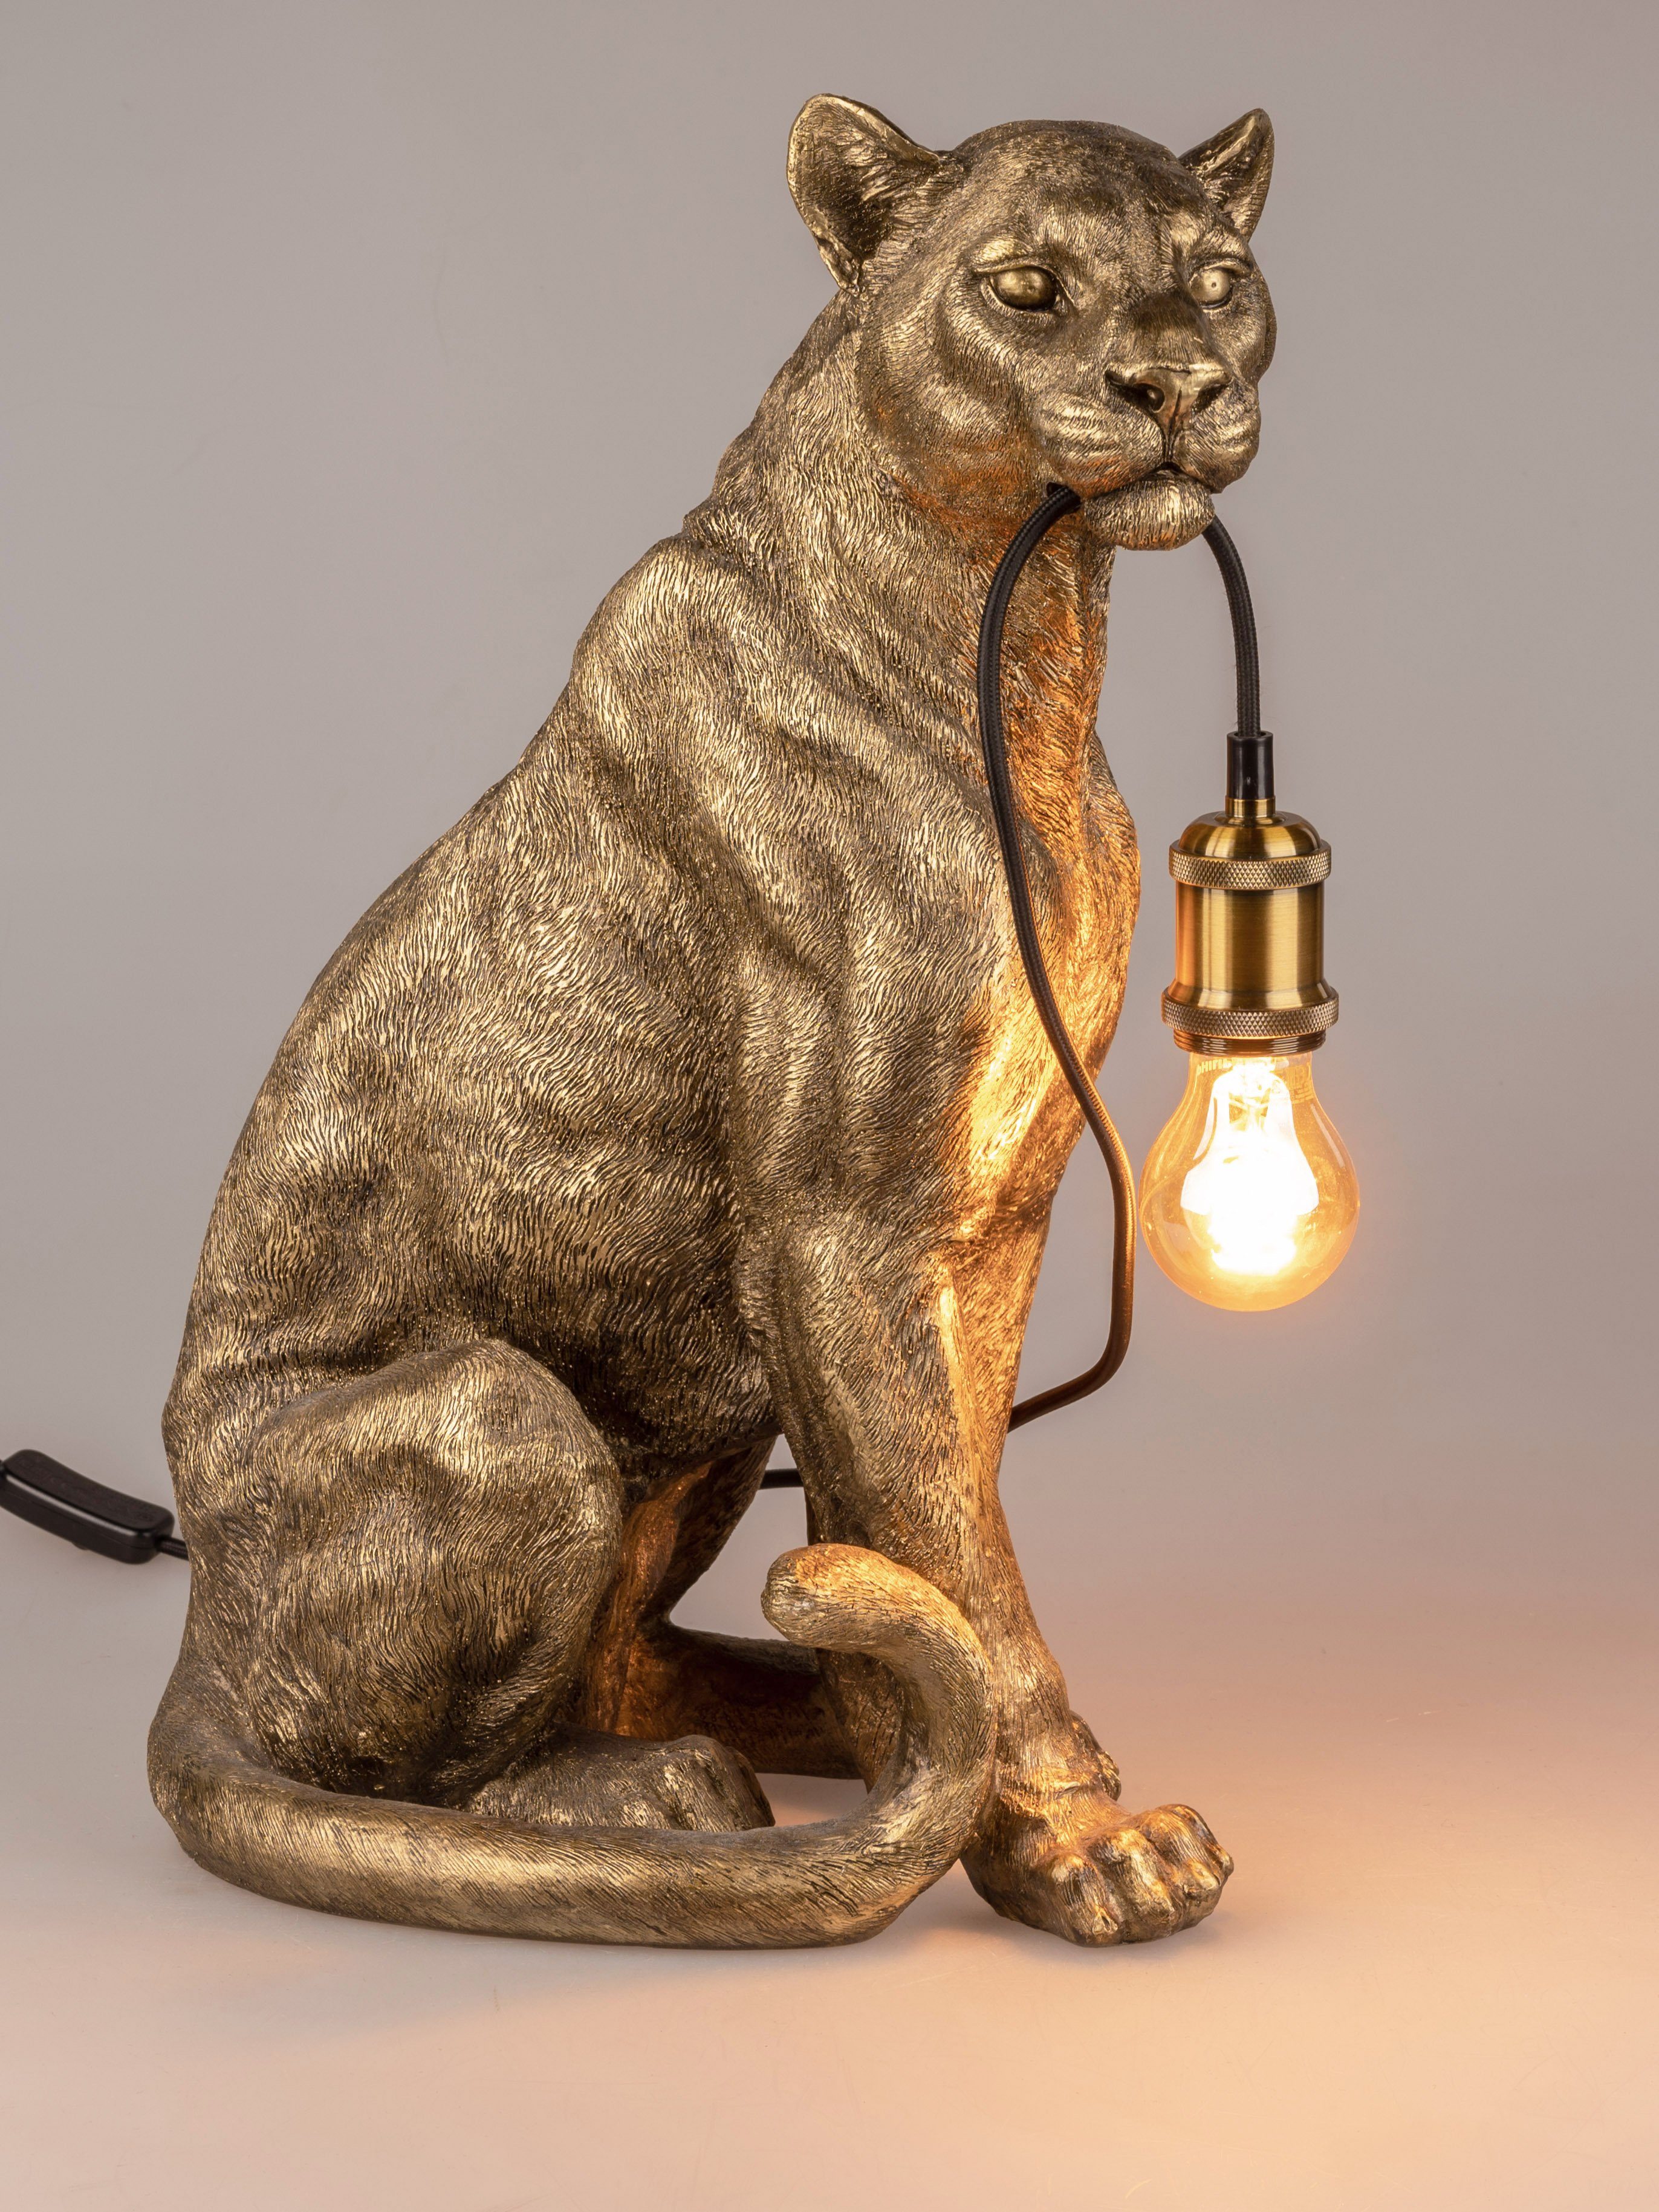 formano Schreibtischlampe Eleganter Lampe Goldener Löwe 52 cm x 38 cm aus Kunststein gefertigt, wechselbar, Dekolampe